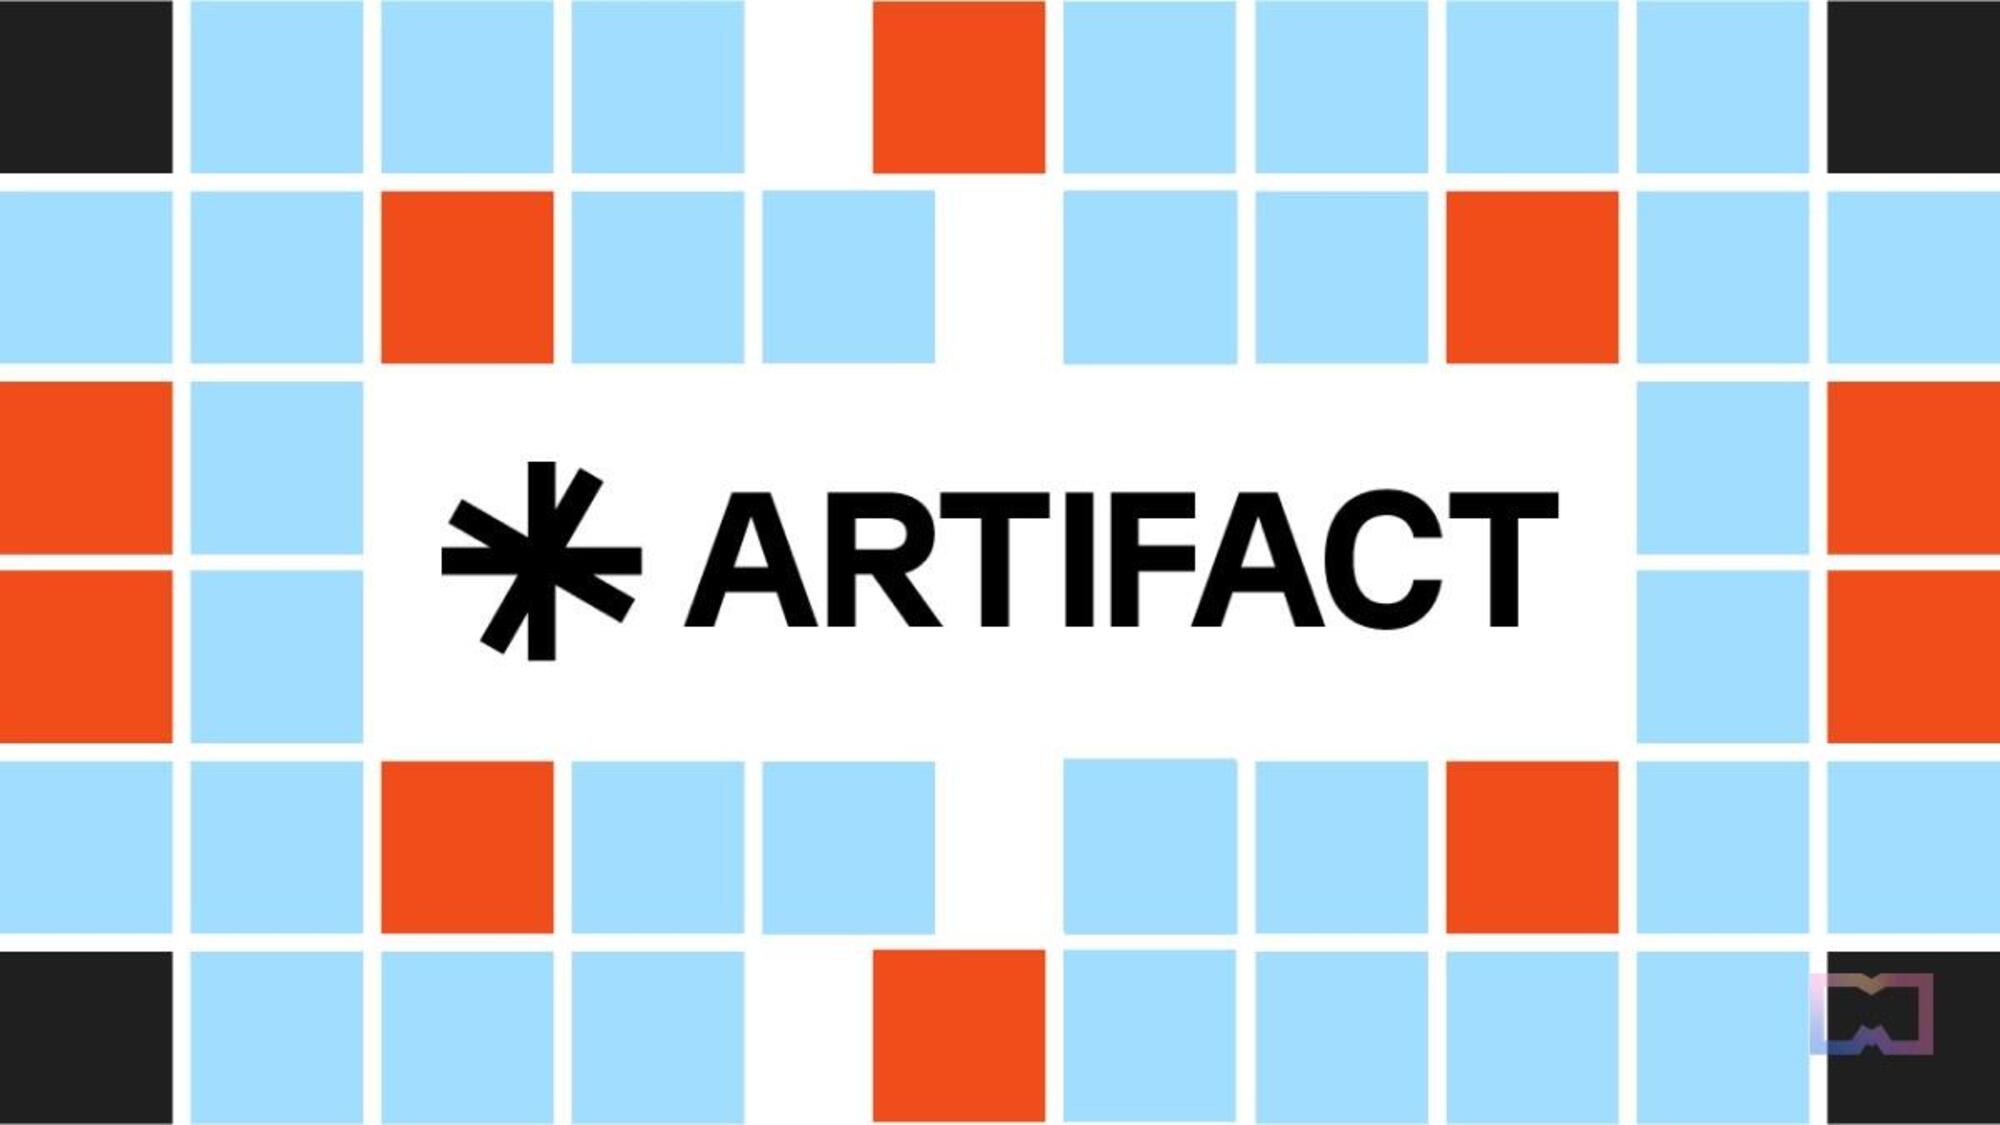 Artifact, la nuova applicazione creata da Kevin Systrom e Mark Krieger 